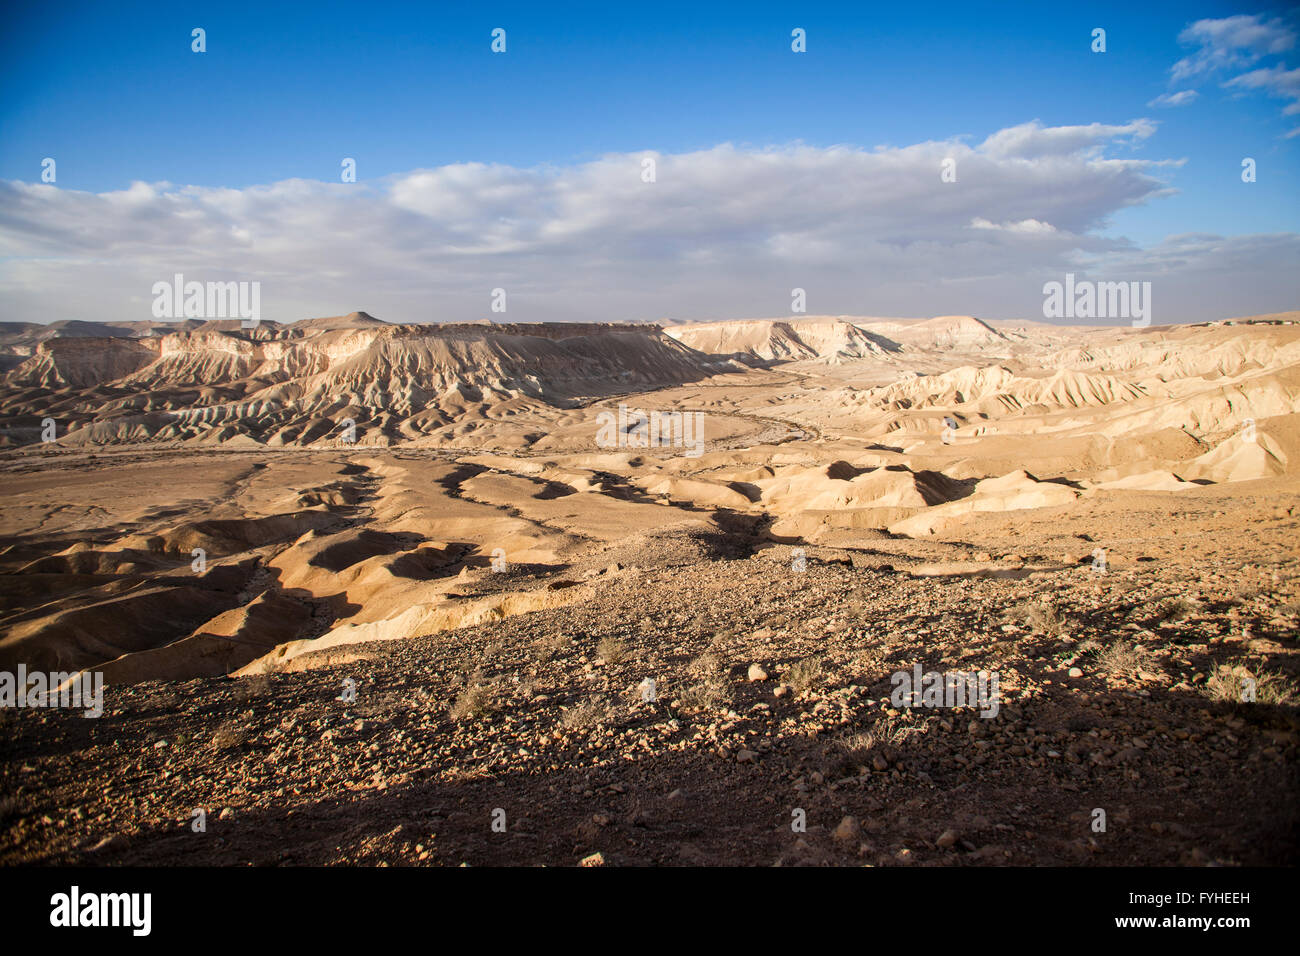 zin valley, negev desert, israel Stock Photo